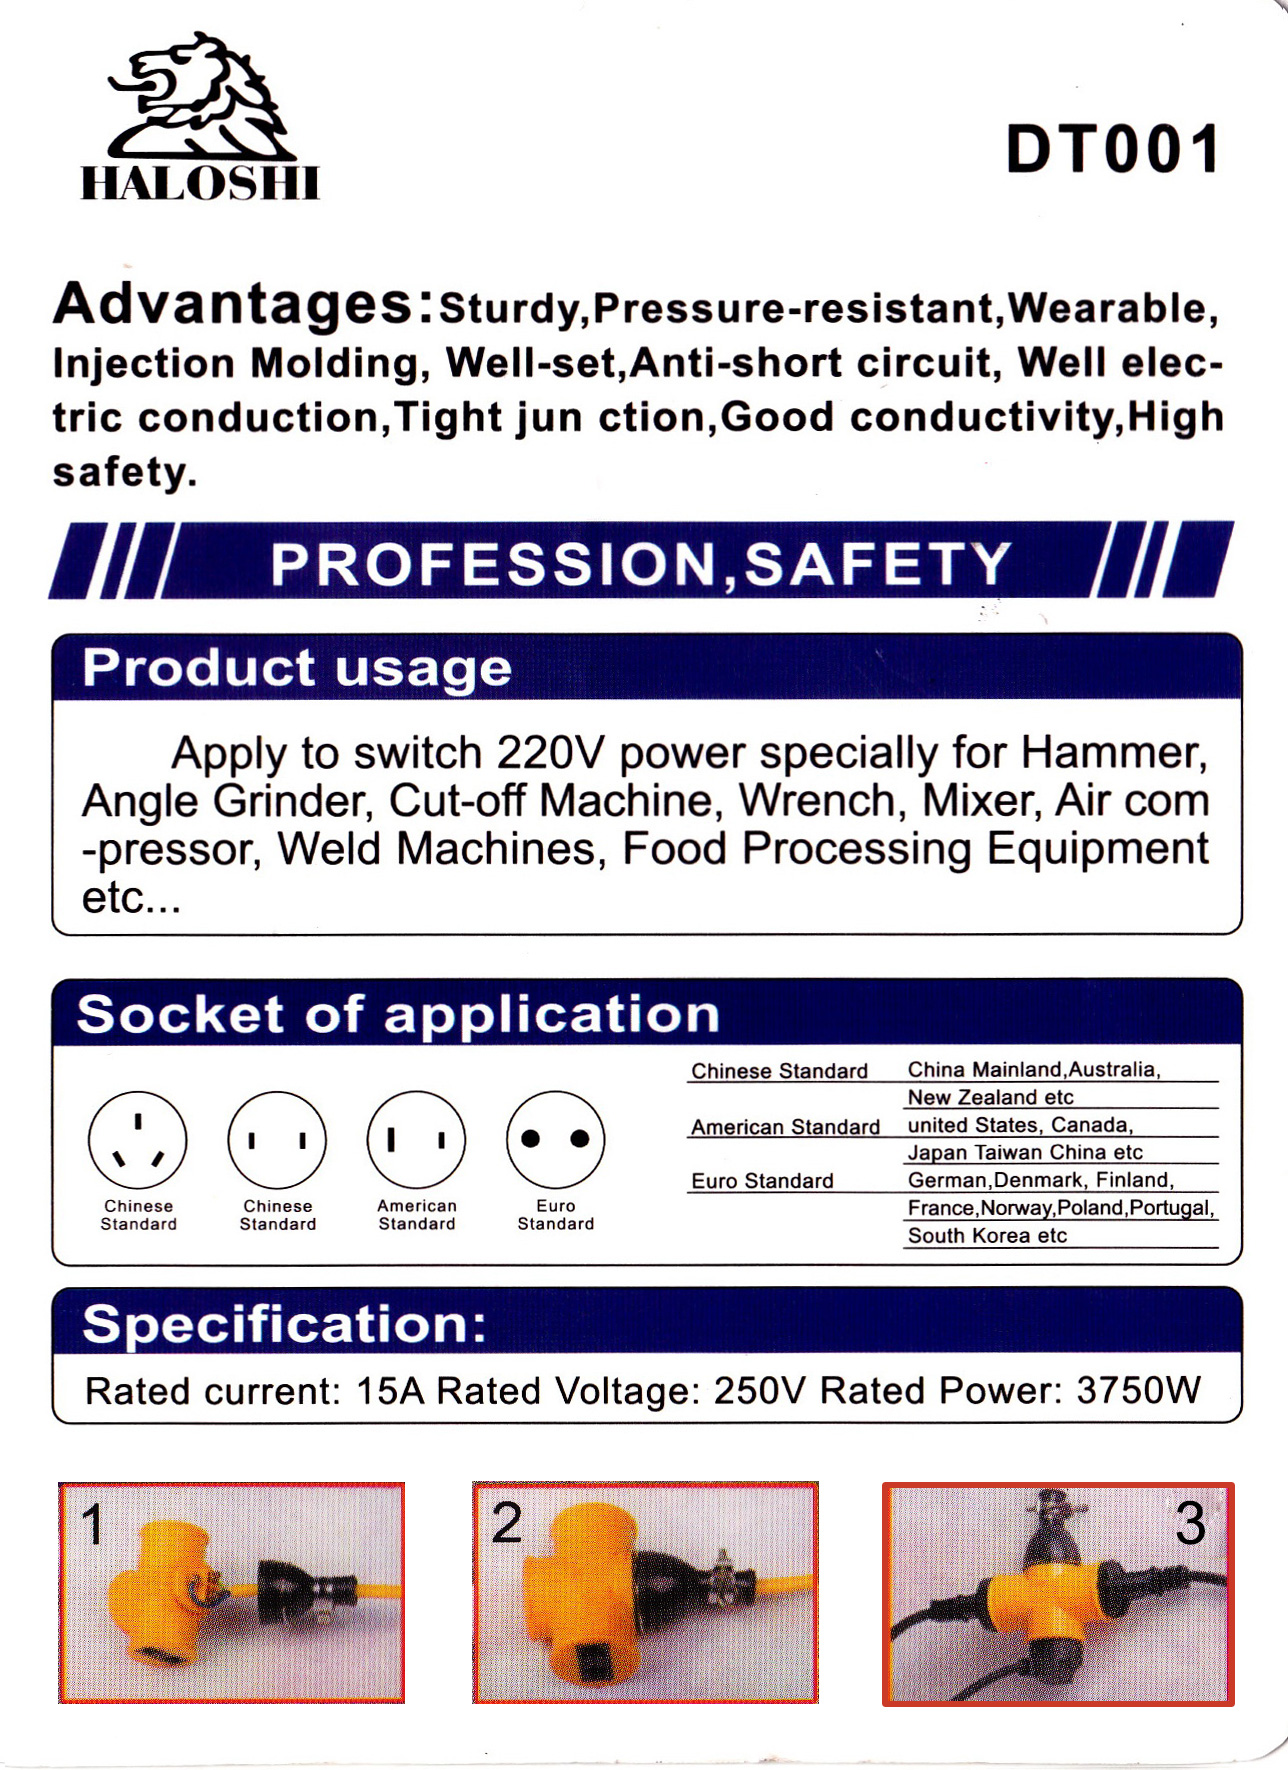 ปลั๊กต่อพ่วงแยก3ทาง ปลั๊กพ่วง3ทาง ยี่ห้อ Haloshi 15A 240V Product usage  Apply to switch 220V power specially for Hammer, Angle Grinder, Cut-off Machine, Wrench, Mixer, Air compressor, Weld Machines, Food Processing Equipment etc.